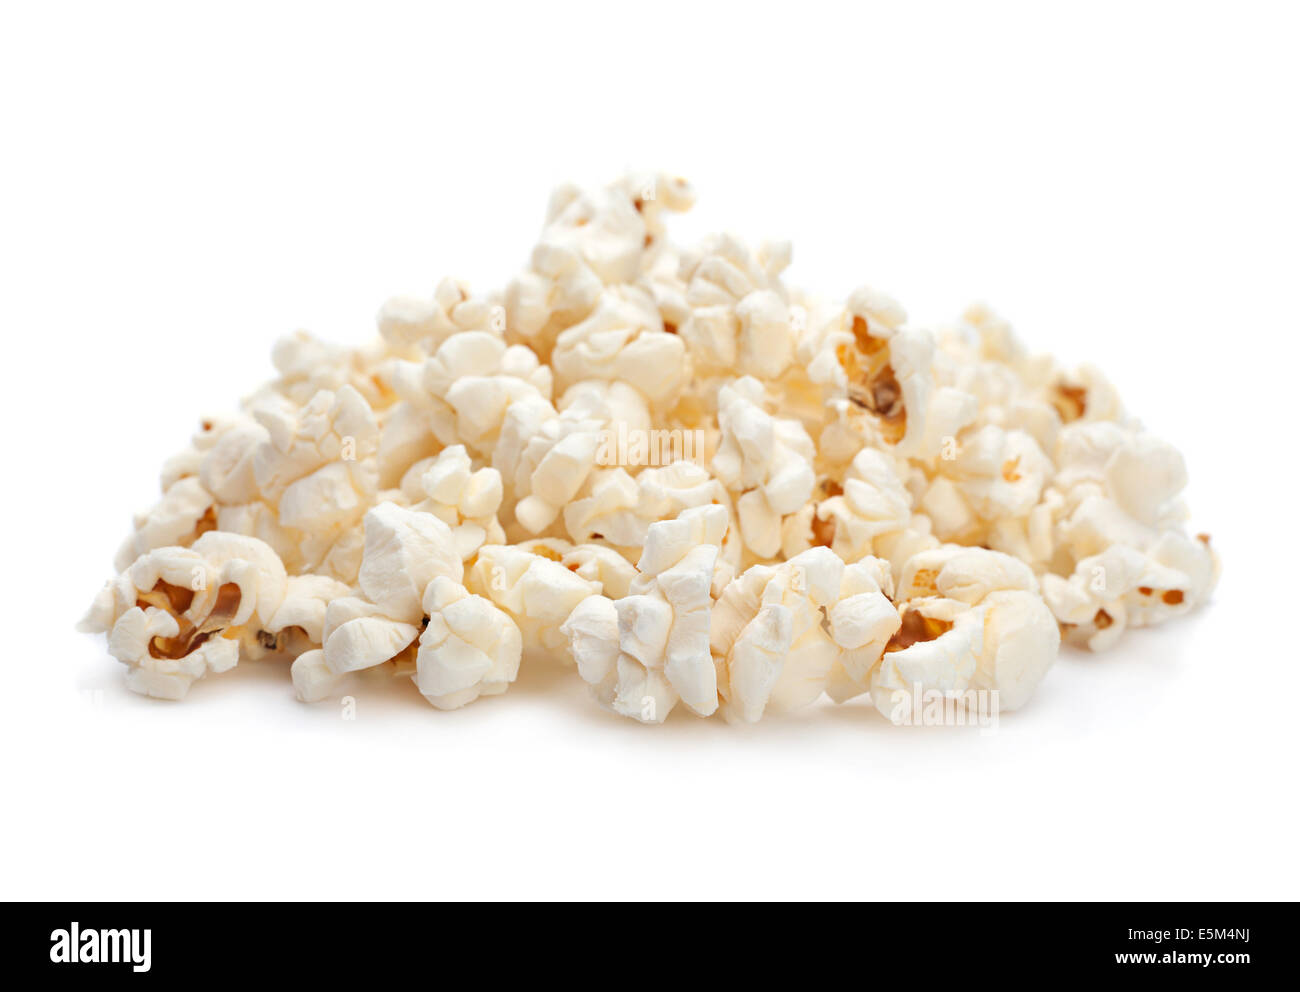 Snack-Popcorn libre isolé sur fond blanc Banque D'Images